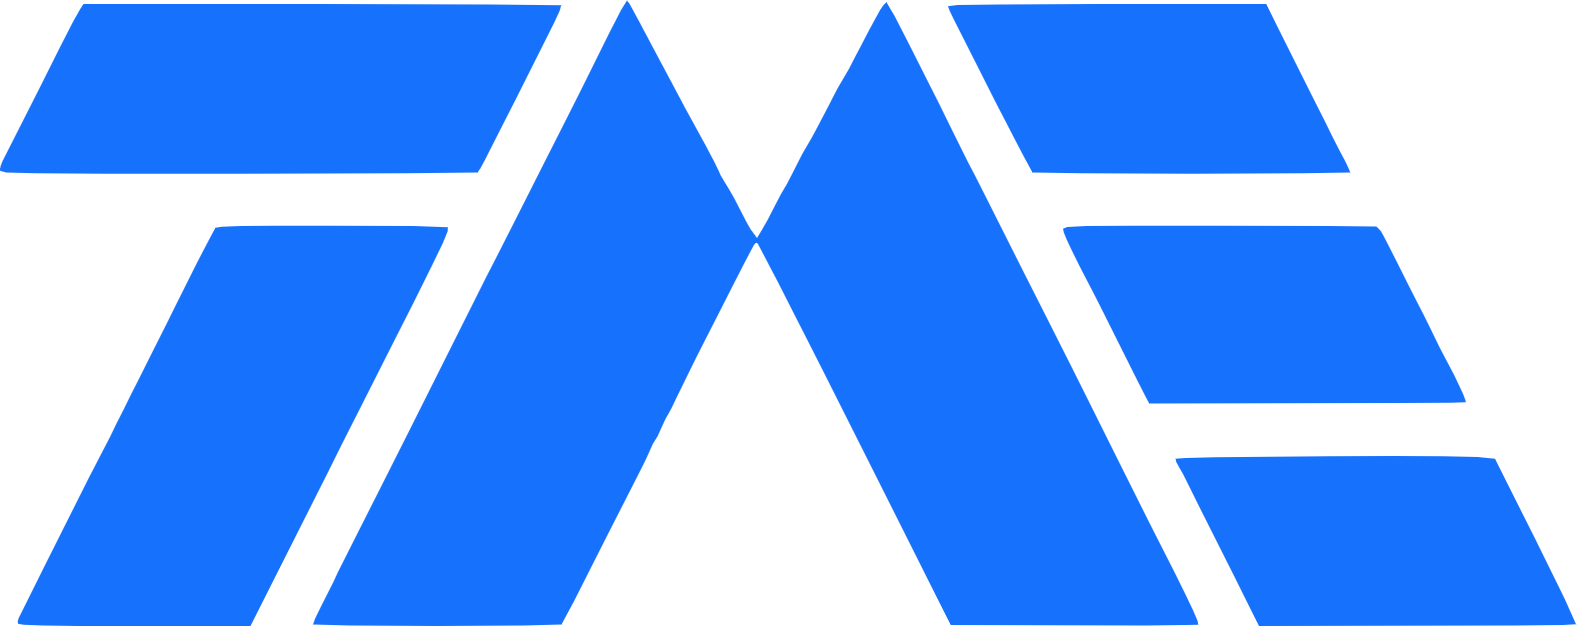 Tencent Music logo (transparent PNG)